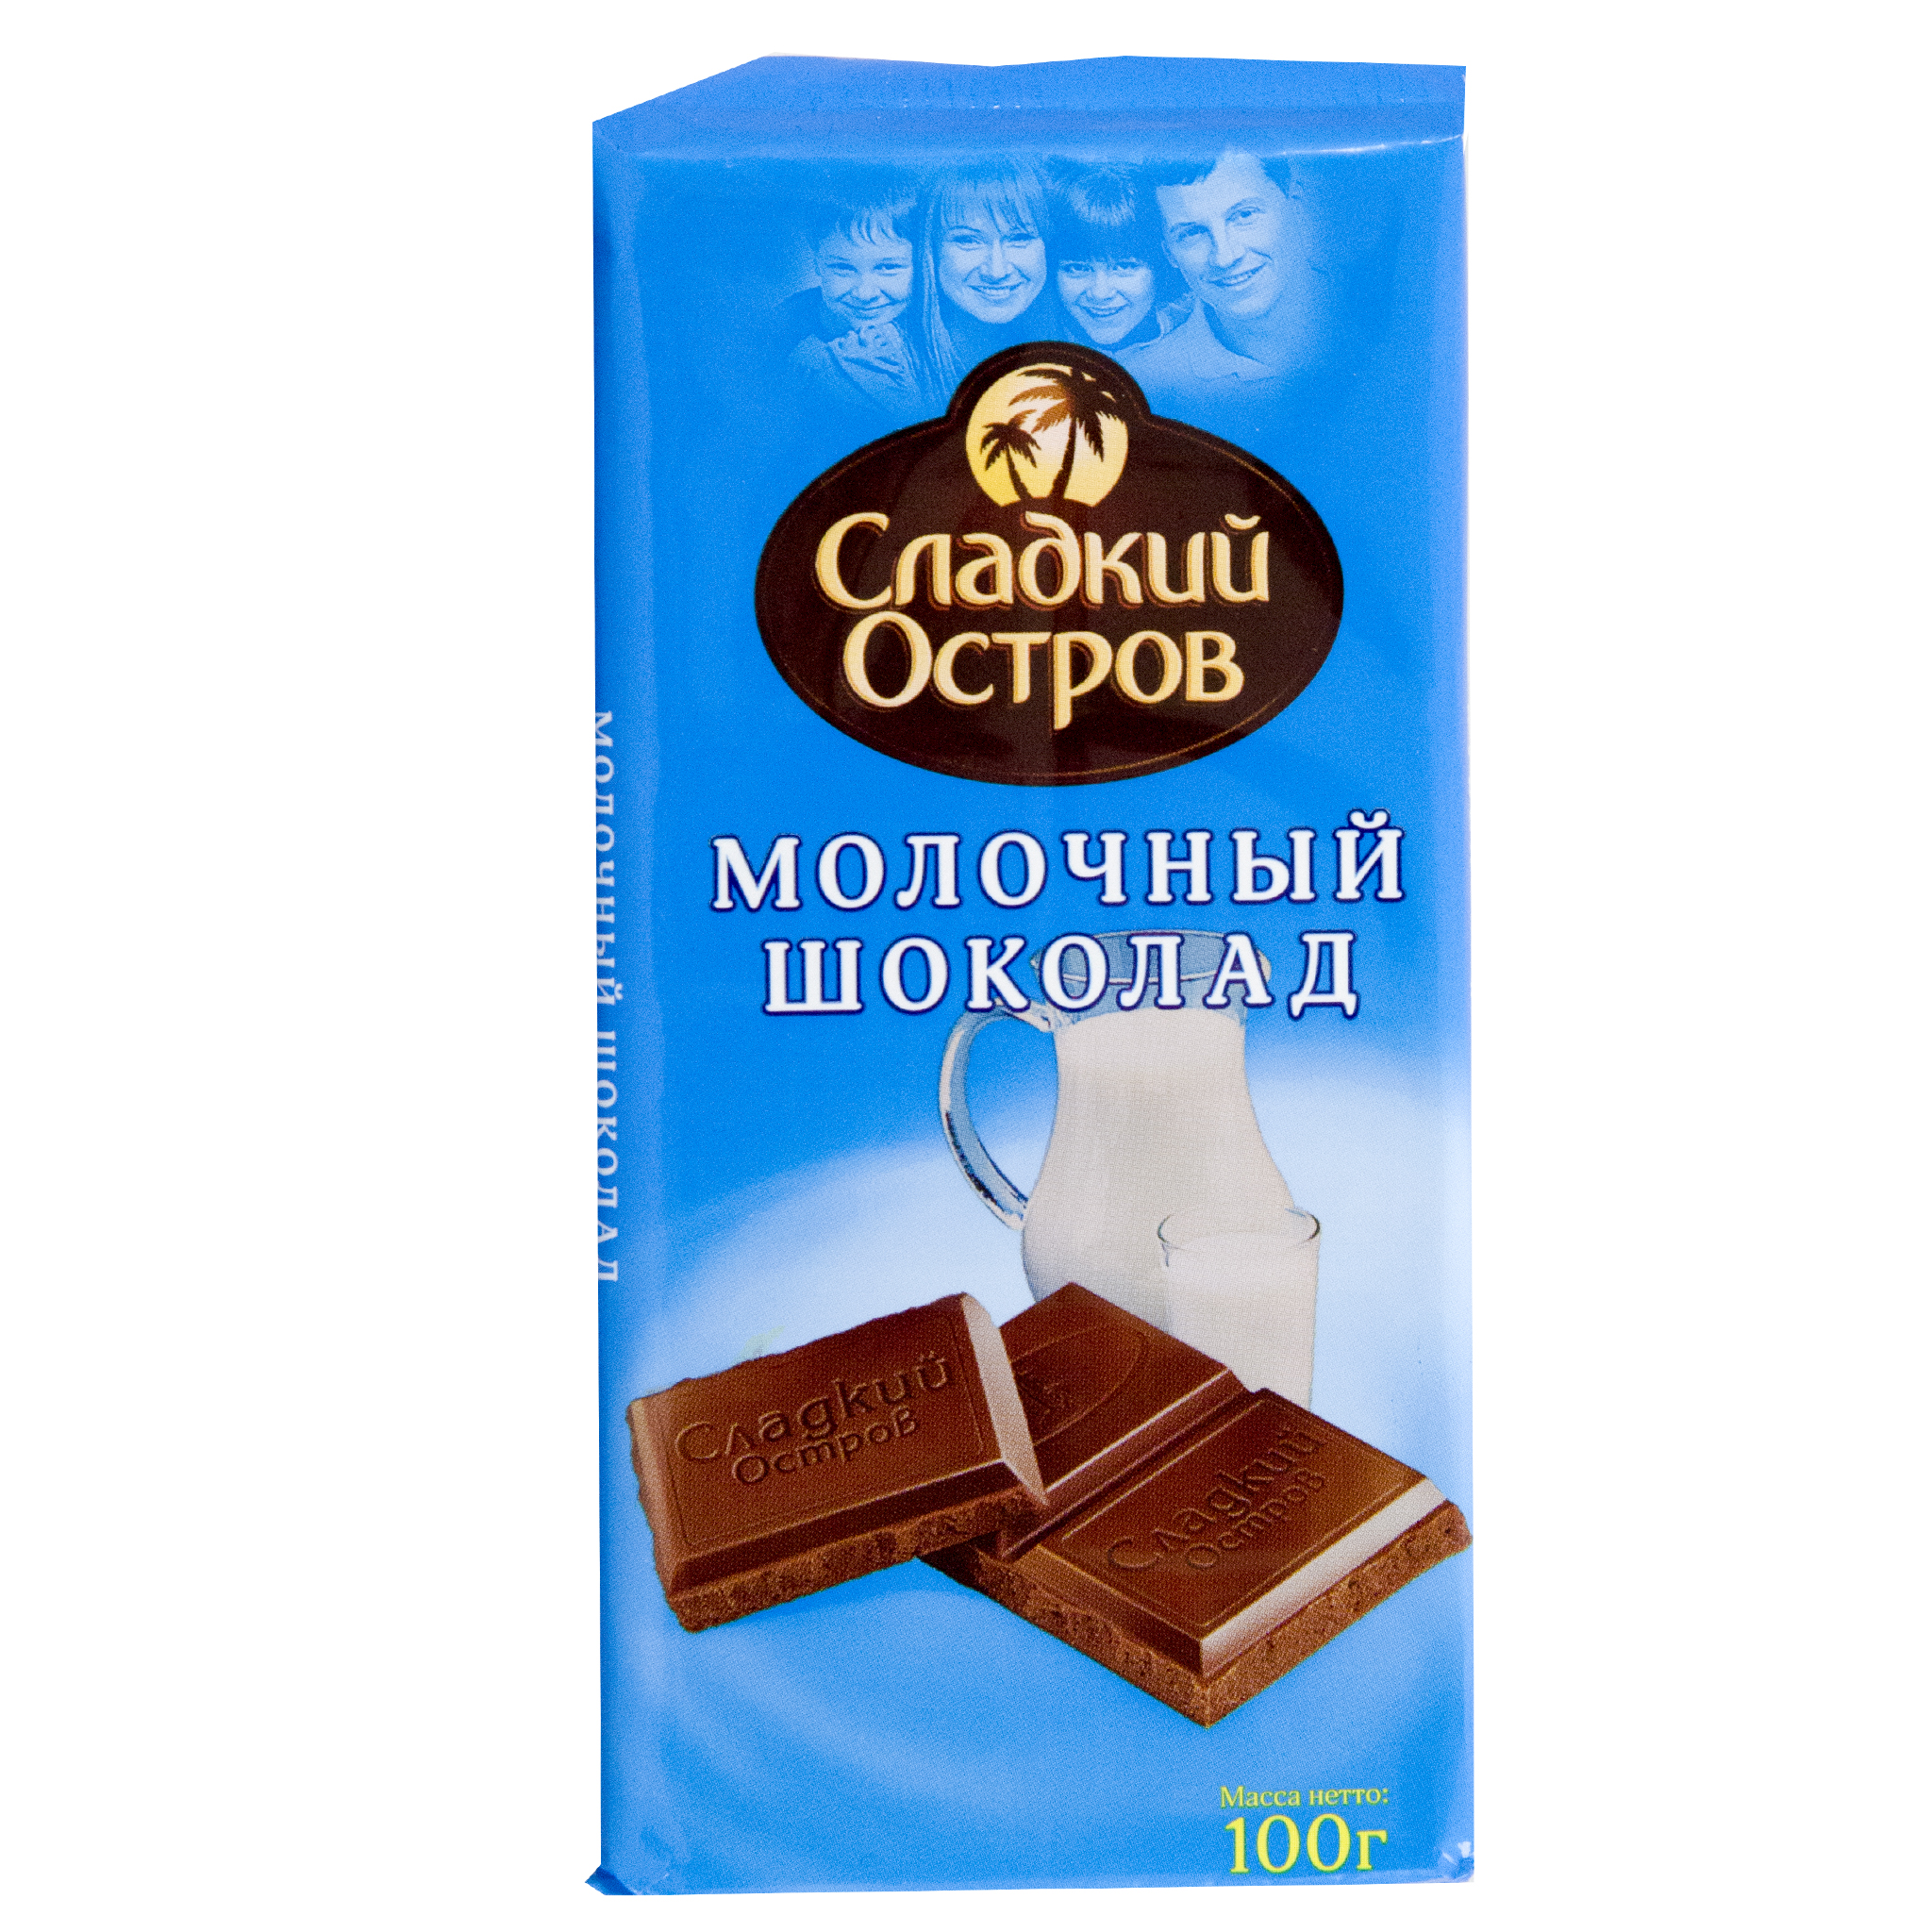 Самый качественный шоколад в россии 2022 года — рейтинг лучших марок